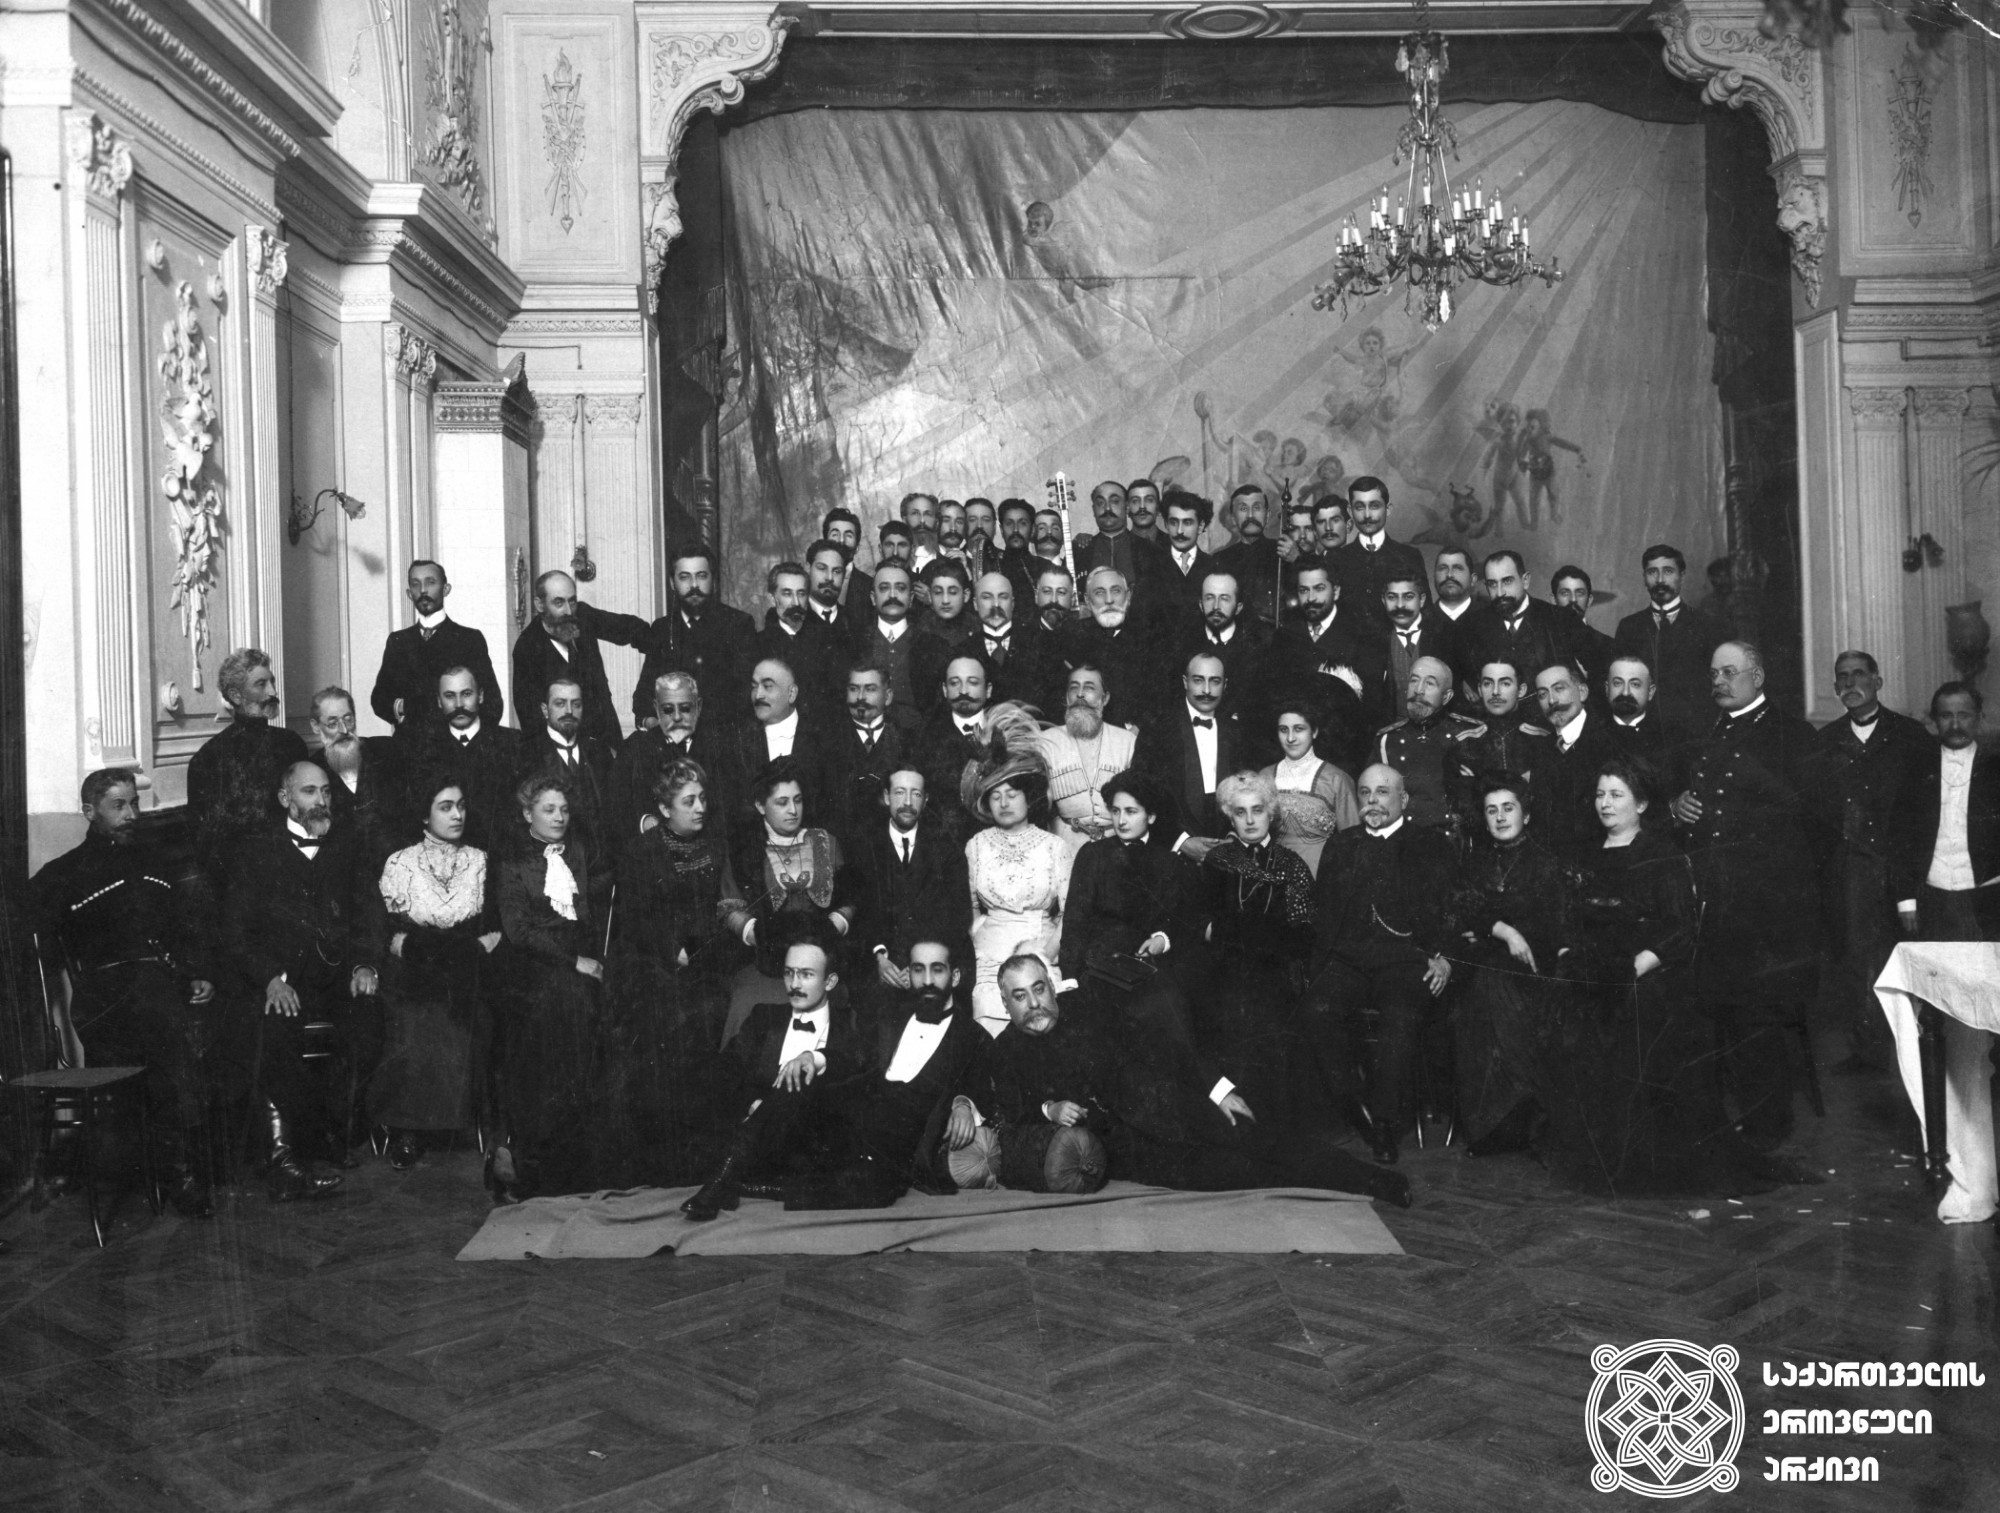 ქართველ თავადაზნაურთა შეხვედრა ინგლისელ დიპლომატ ოლივერ უორდროპთან. ზემოდან მესამე რიგში, შუაში ზის ალექსანდრე სარაჯიშვილი -  მთარგმნელი, ჟურნალისტი, საზოგადო მოღვაწე; 1899 წელს არჩეული იყო სოხუმის ქალაქის თავად. <br>
1911 წელი <br>
Meeting of the Georgian nobility with the English diplomat Oliver Wardrop In the third row from the top, in the middle sits Aleksandre Sarajishvili, translator, journalist,
 and public figure. In 1899, he was elected the head of the city of Sokhumi. <br>
1911